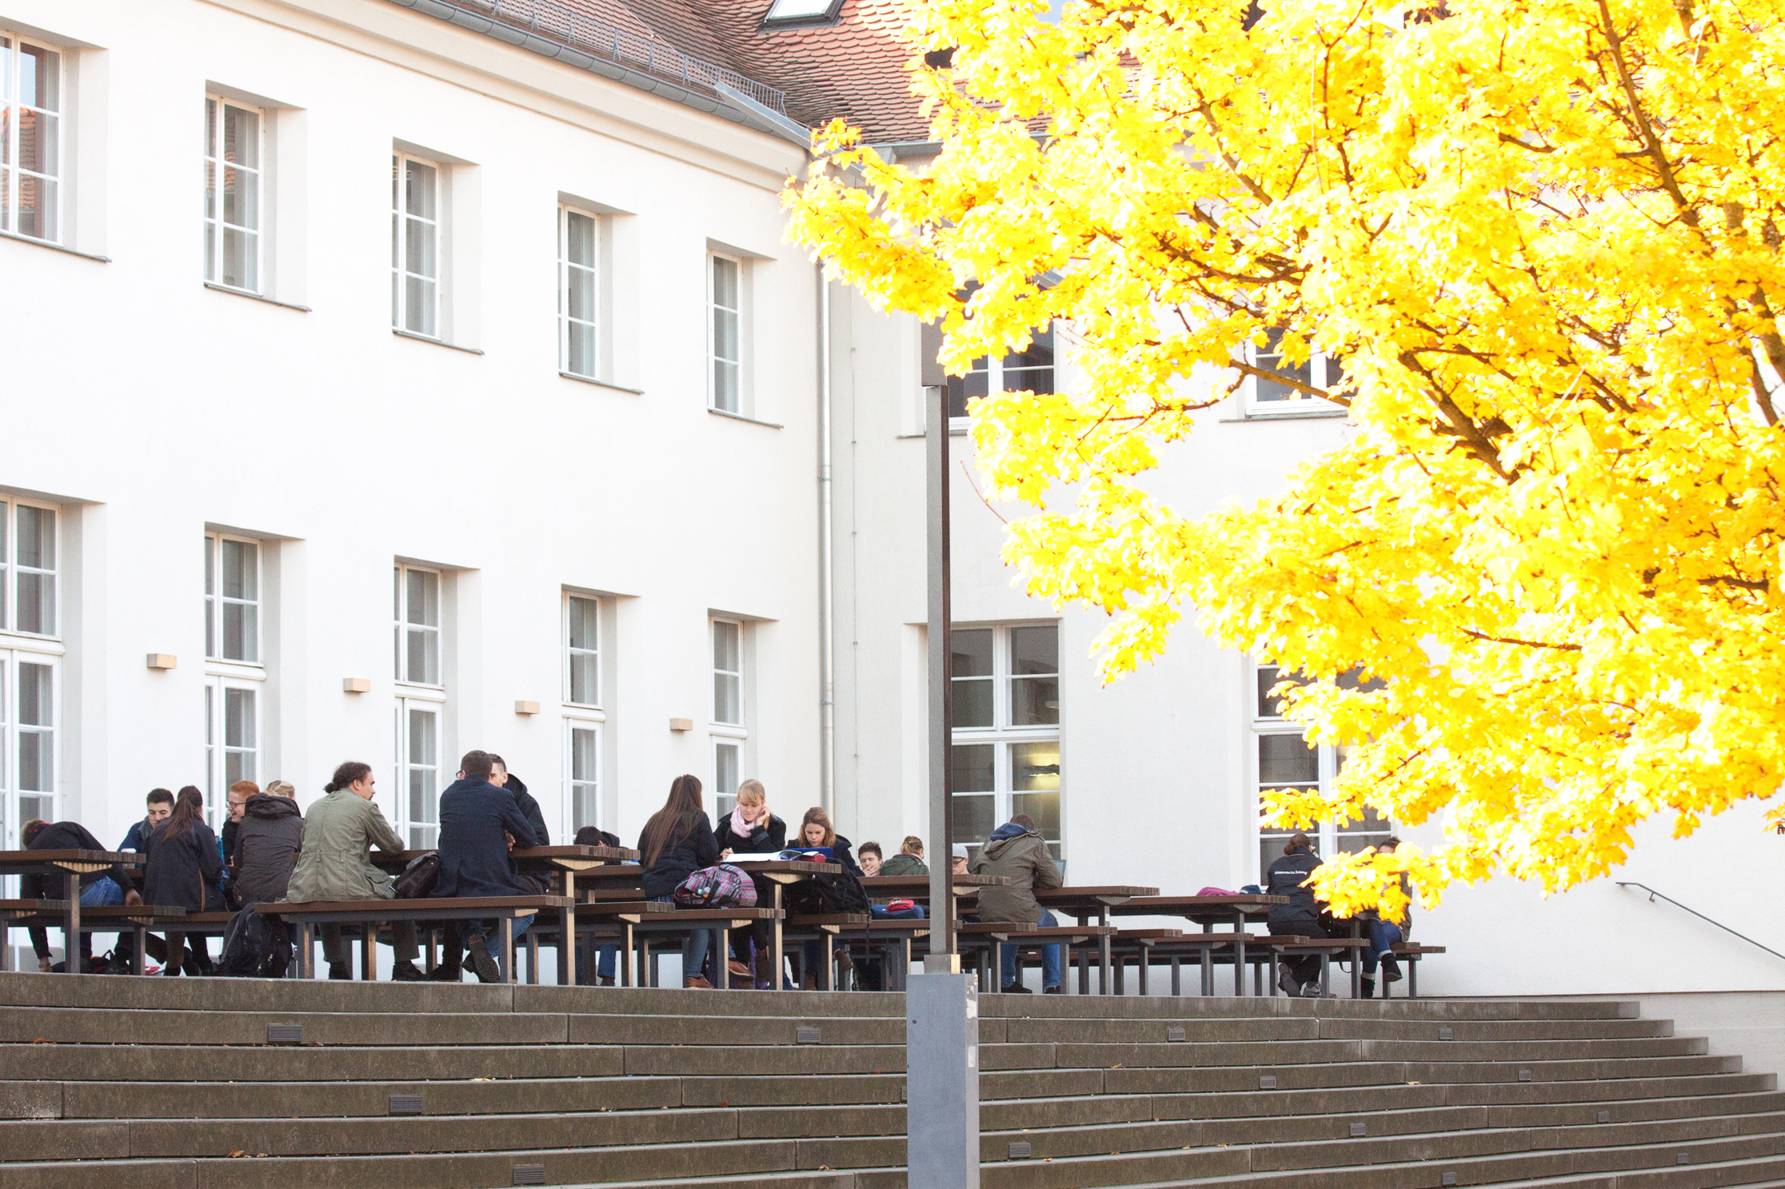 Terrasse der Alten Mensa Mommsenstraße mit Bänken und Tischen auf denen Studenten mit Jacken sitzen. Der Baum rechts im Bild hat schon herbstlich verfärbte Blätter.